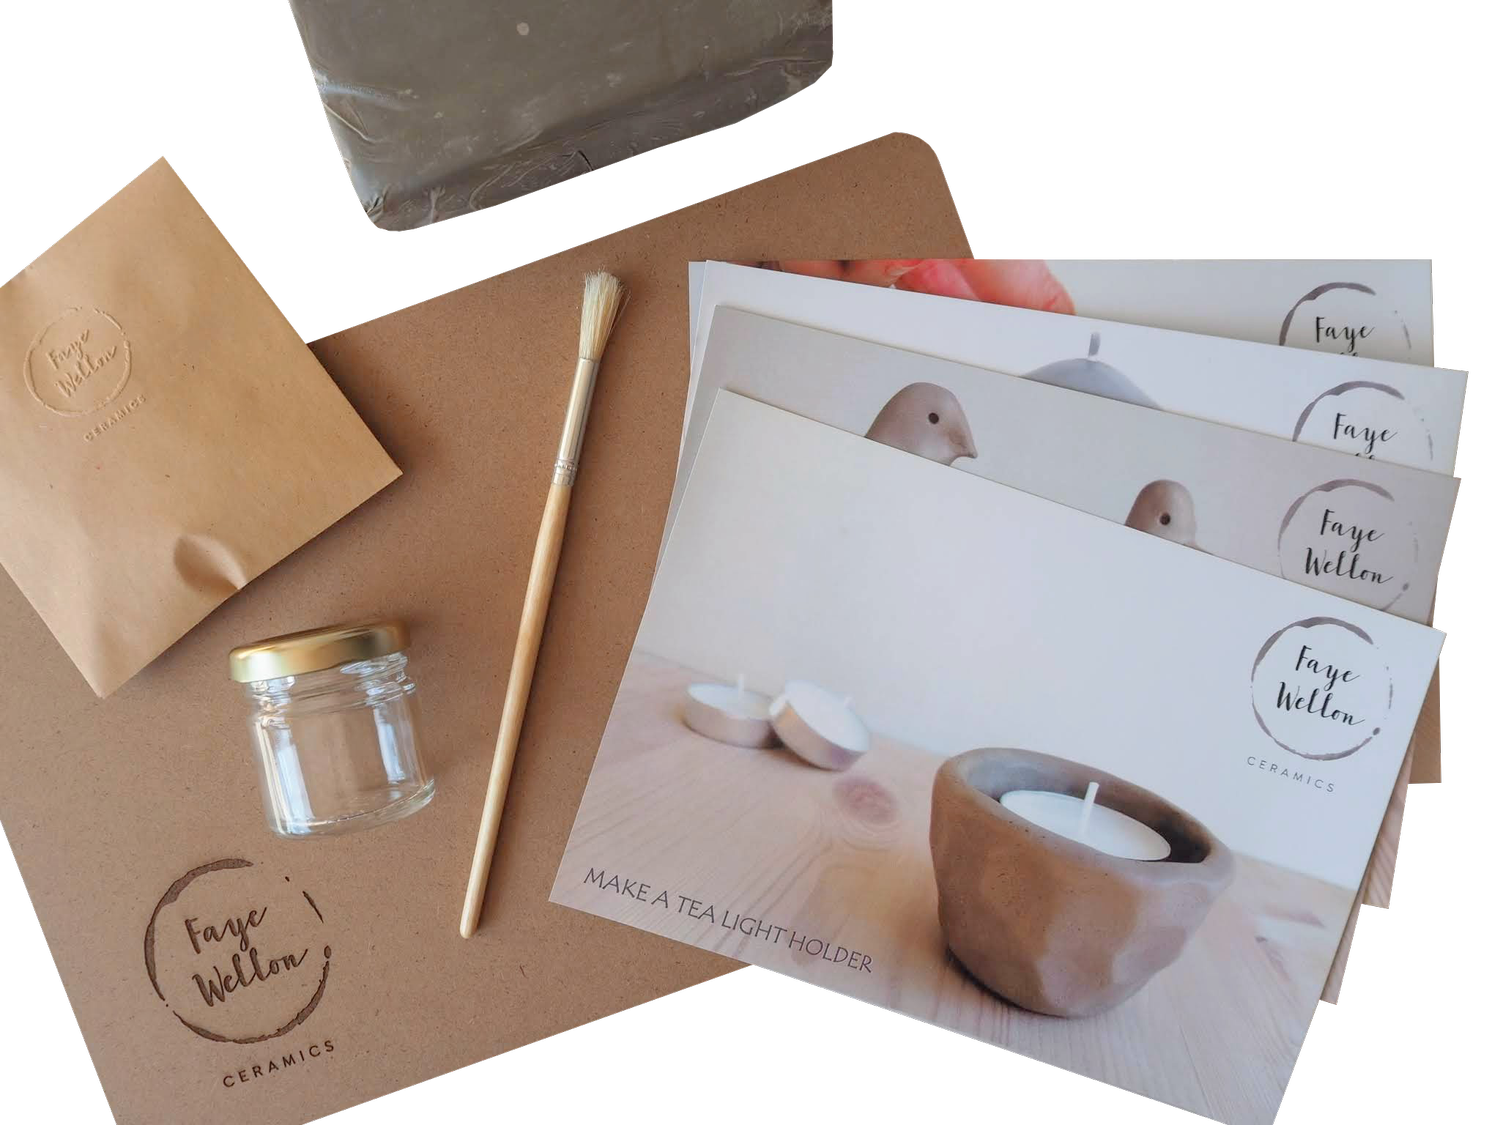 Clay Pottery Kit — At Home Pottery Kits — Faye Wellon Ceramics